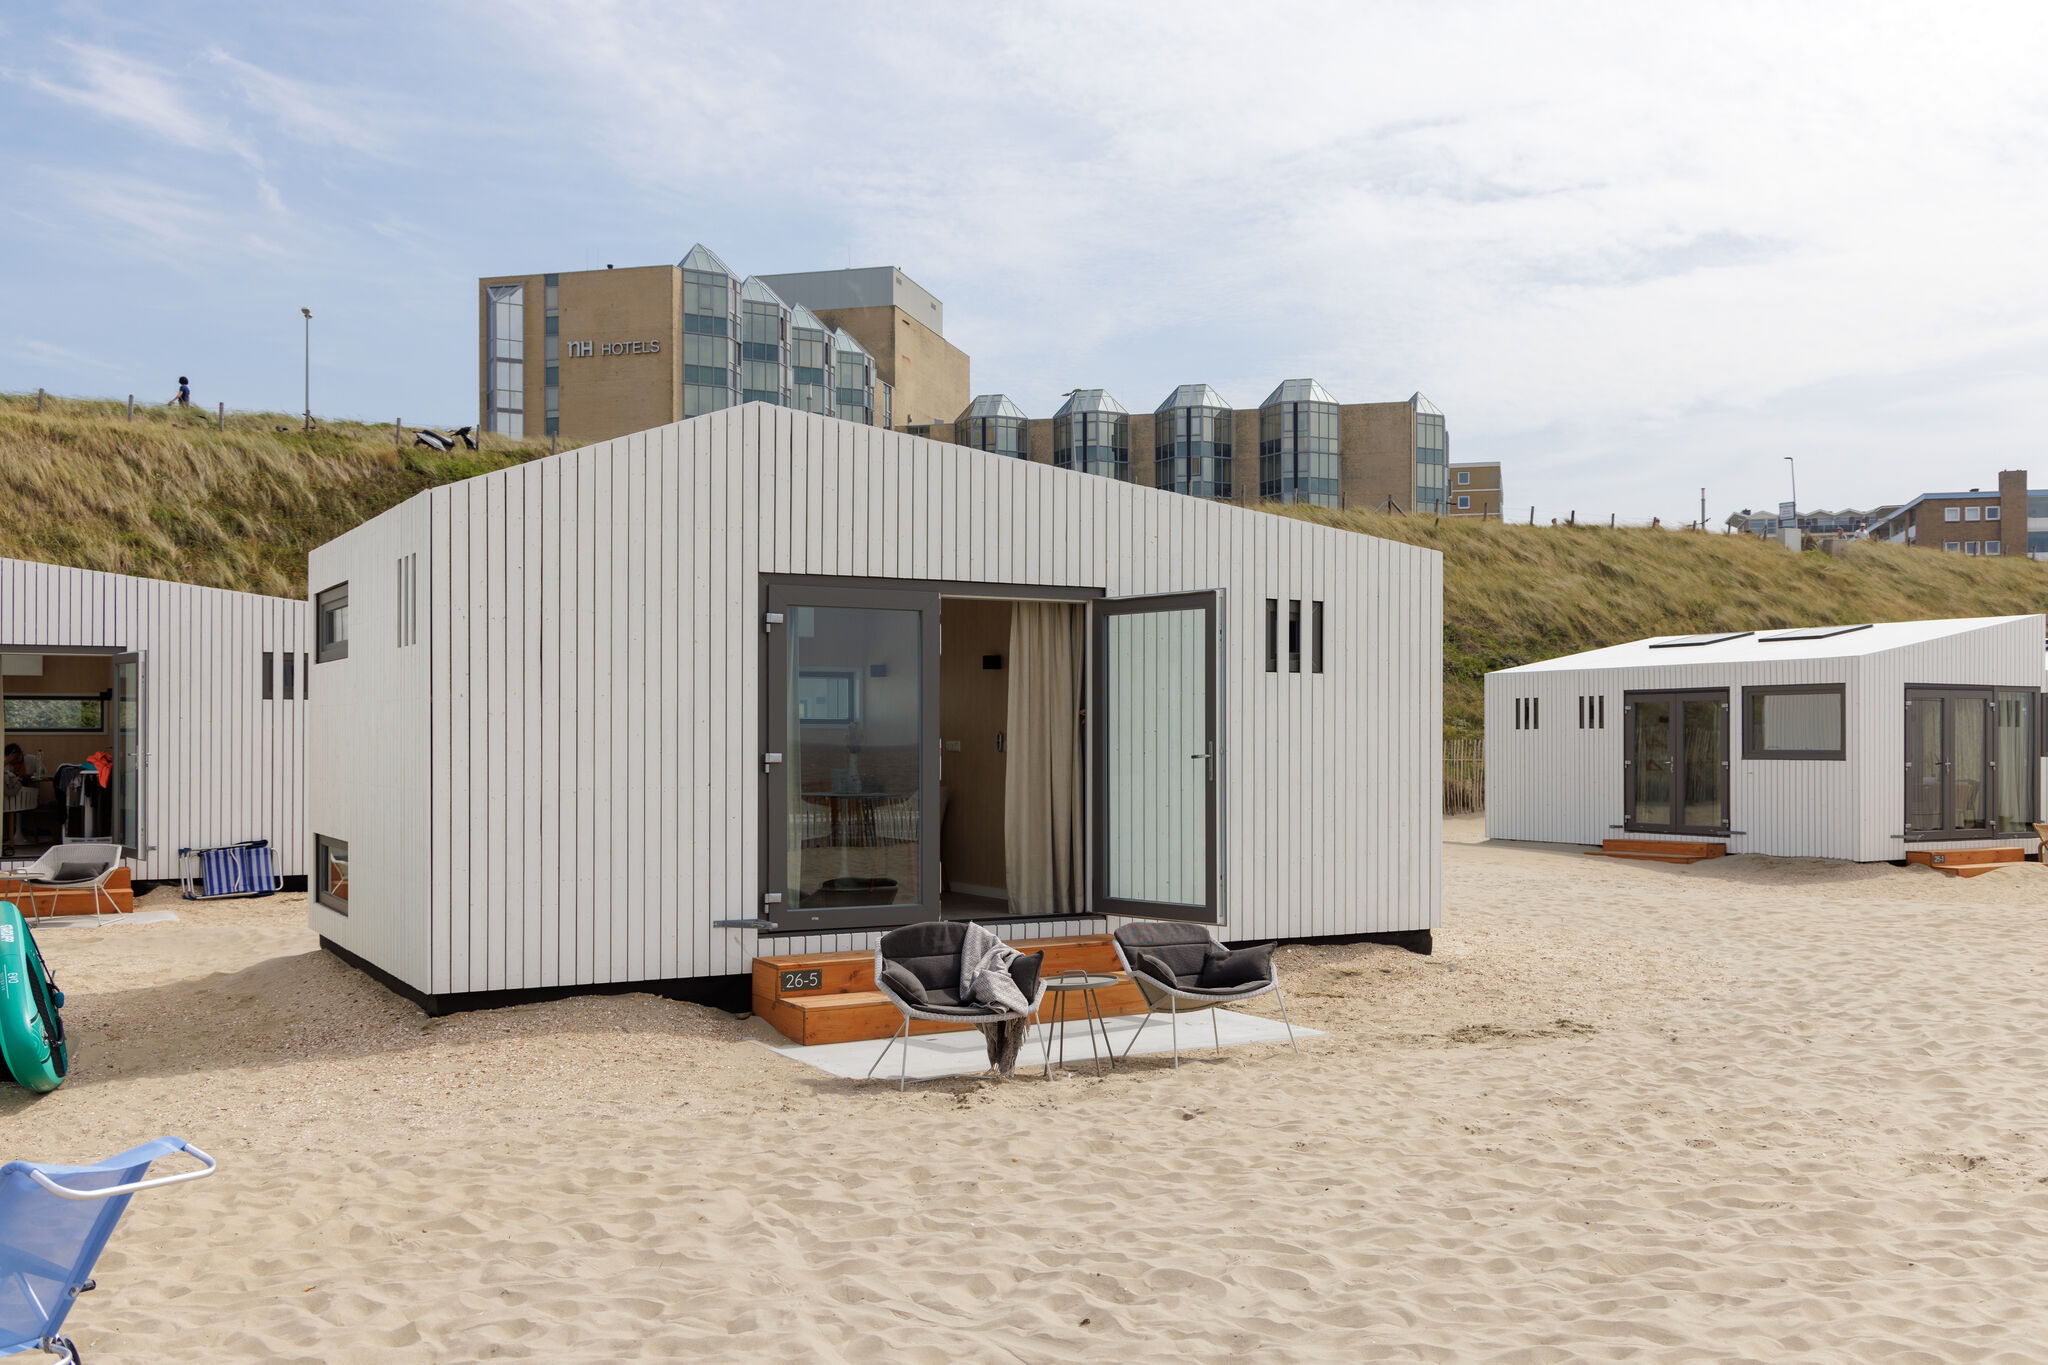 Maison de plage unique sur la plage de Zandvoort